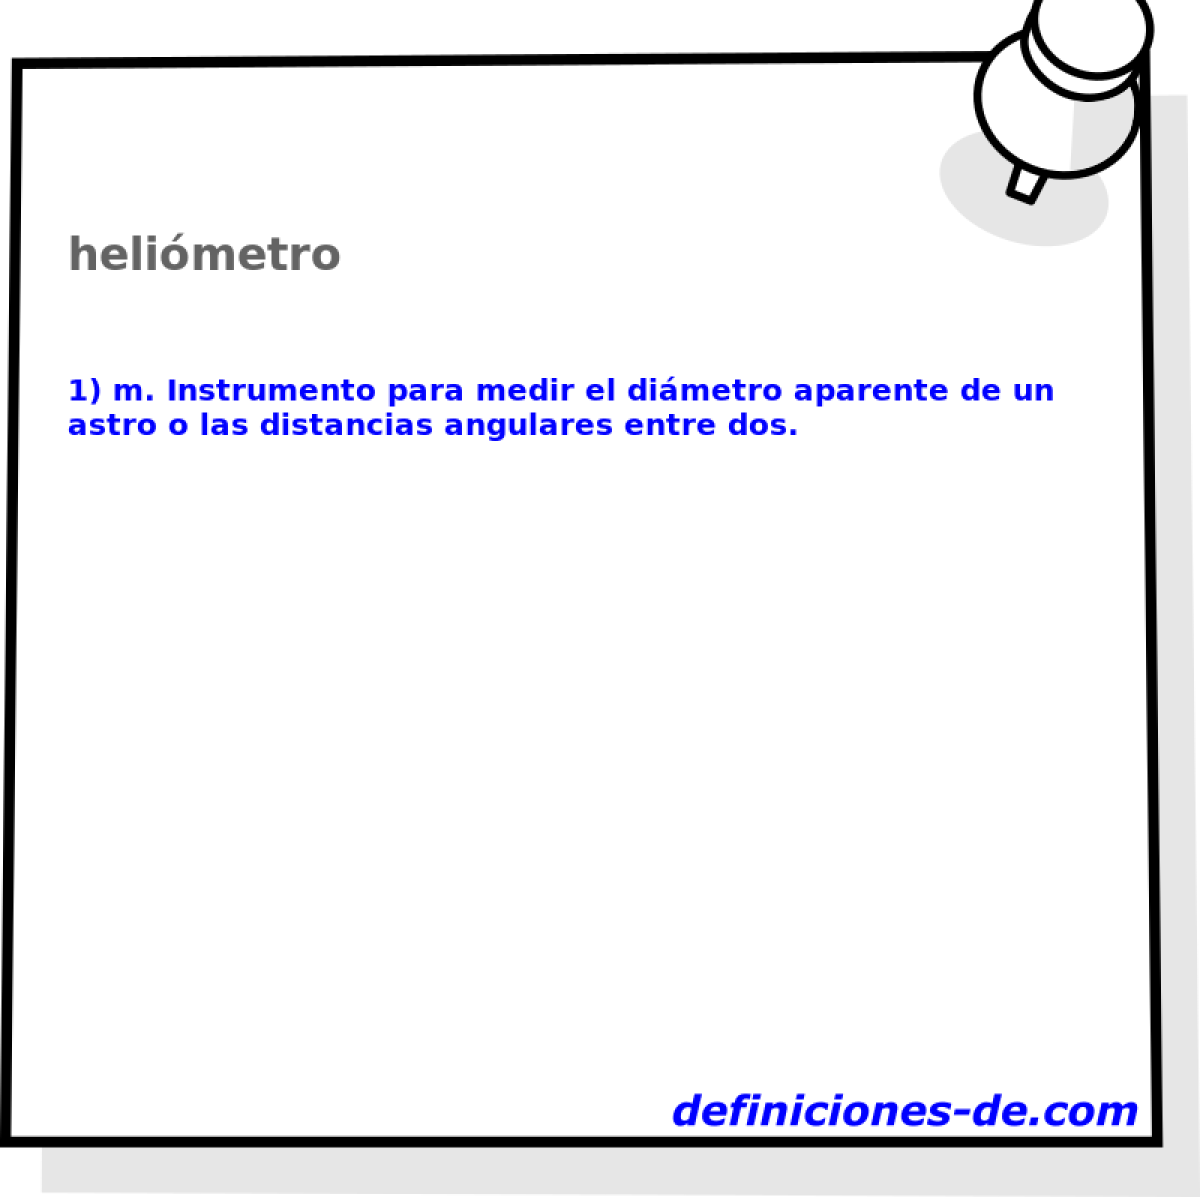 helimetro 